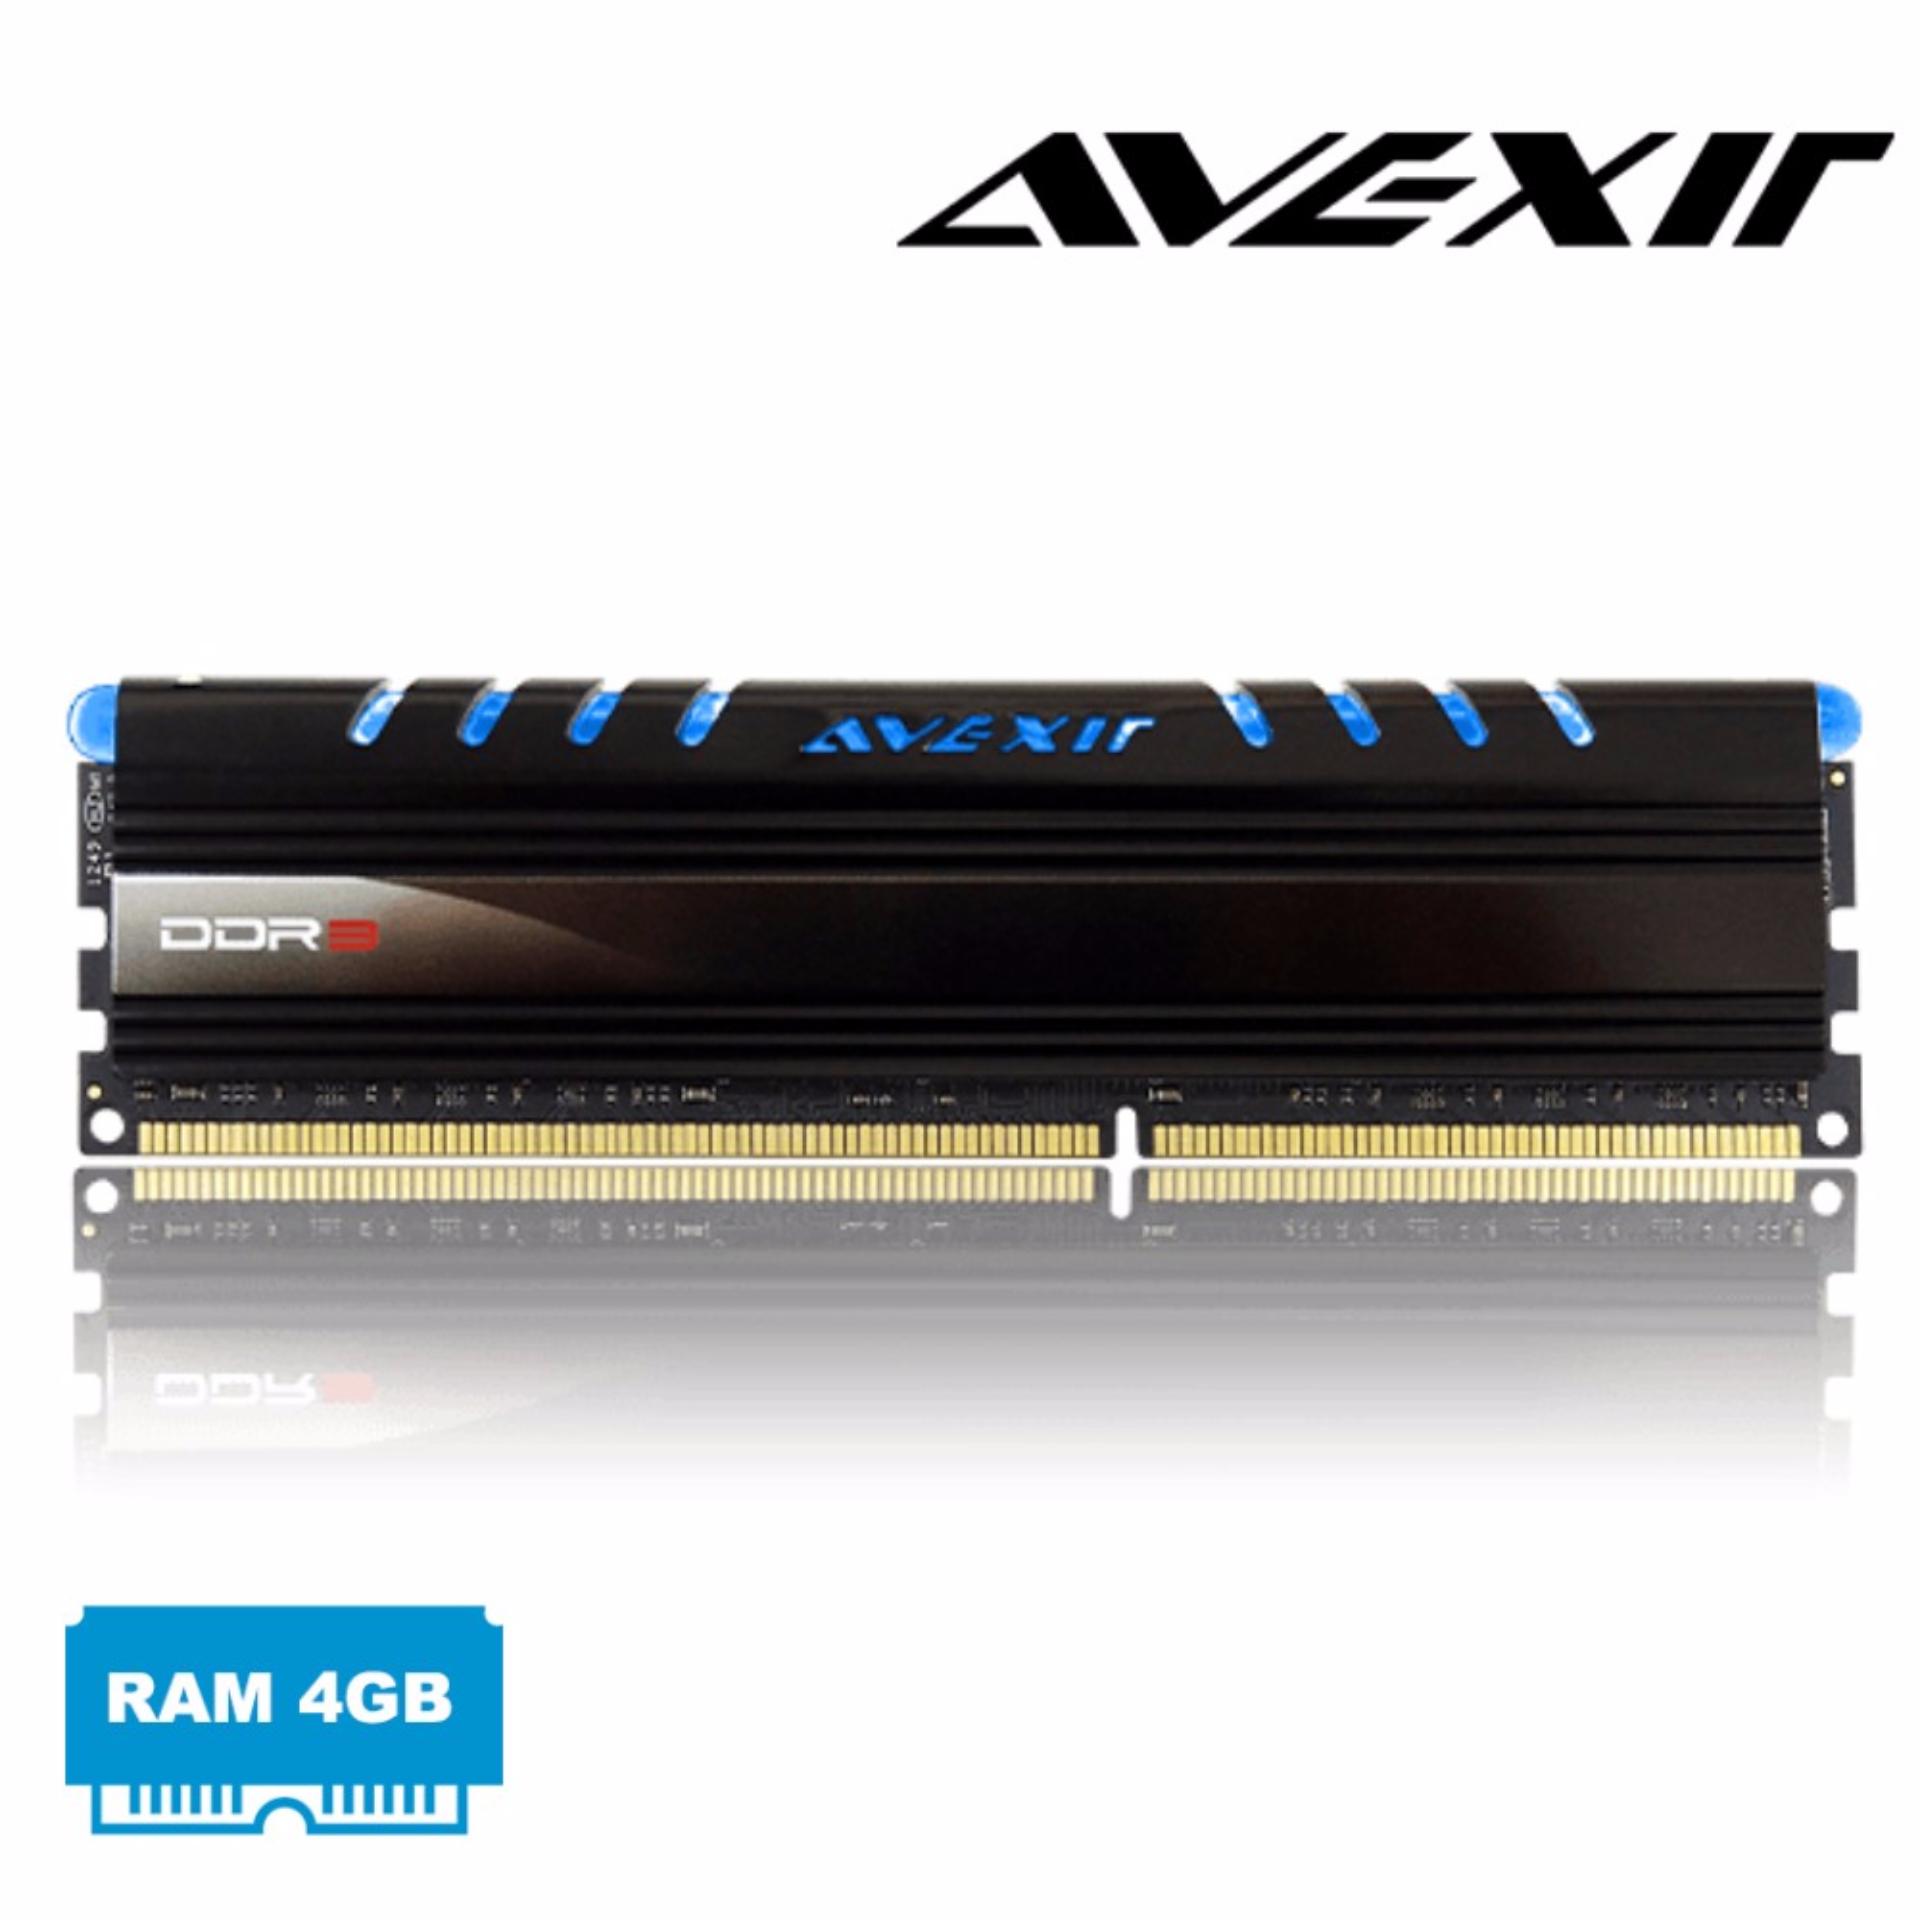 RAM máy tính DDR3 AVEXIR 4GB Bus 1600 Tản nhiệt - Có đèn Led (Xanh Blue)